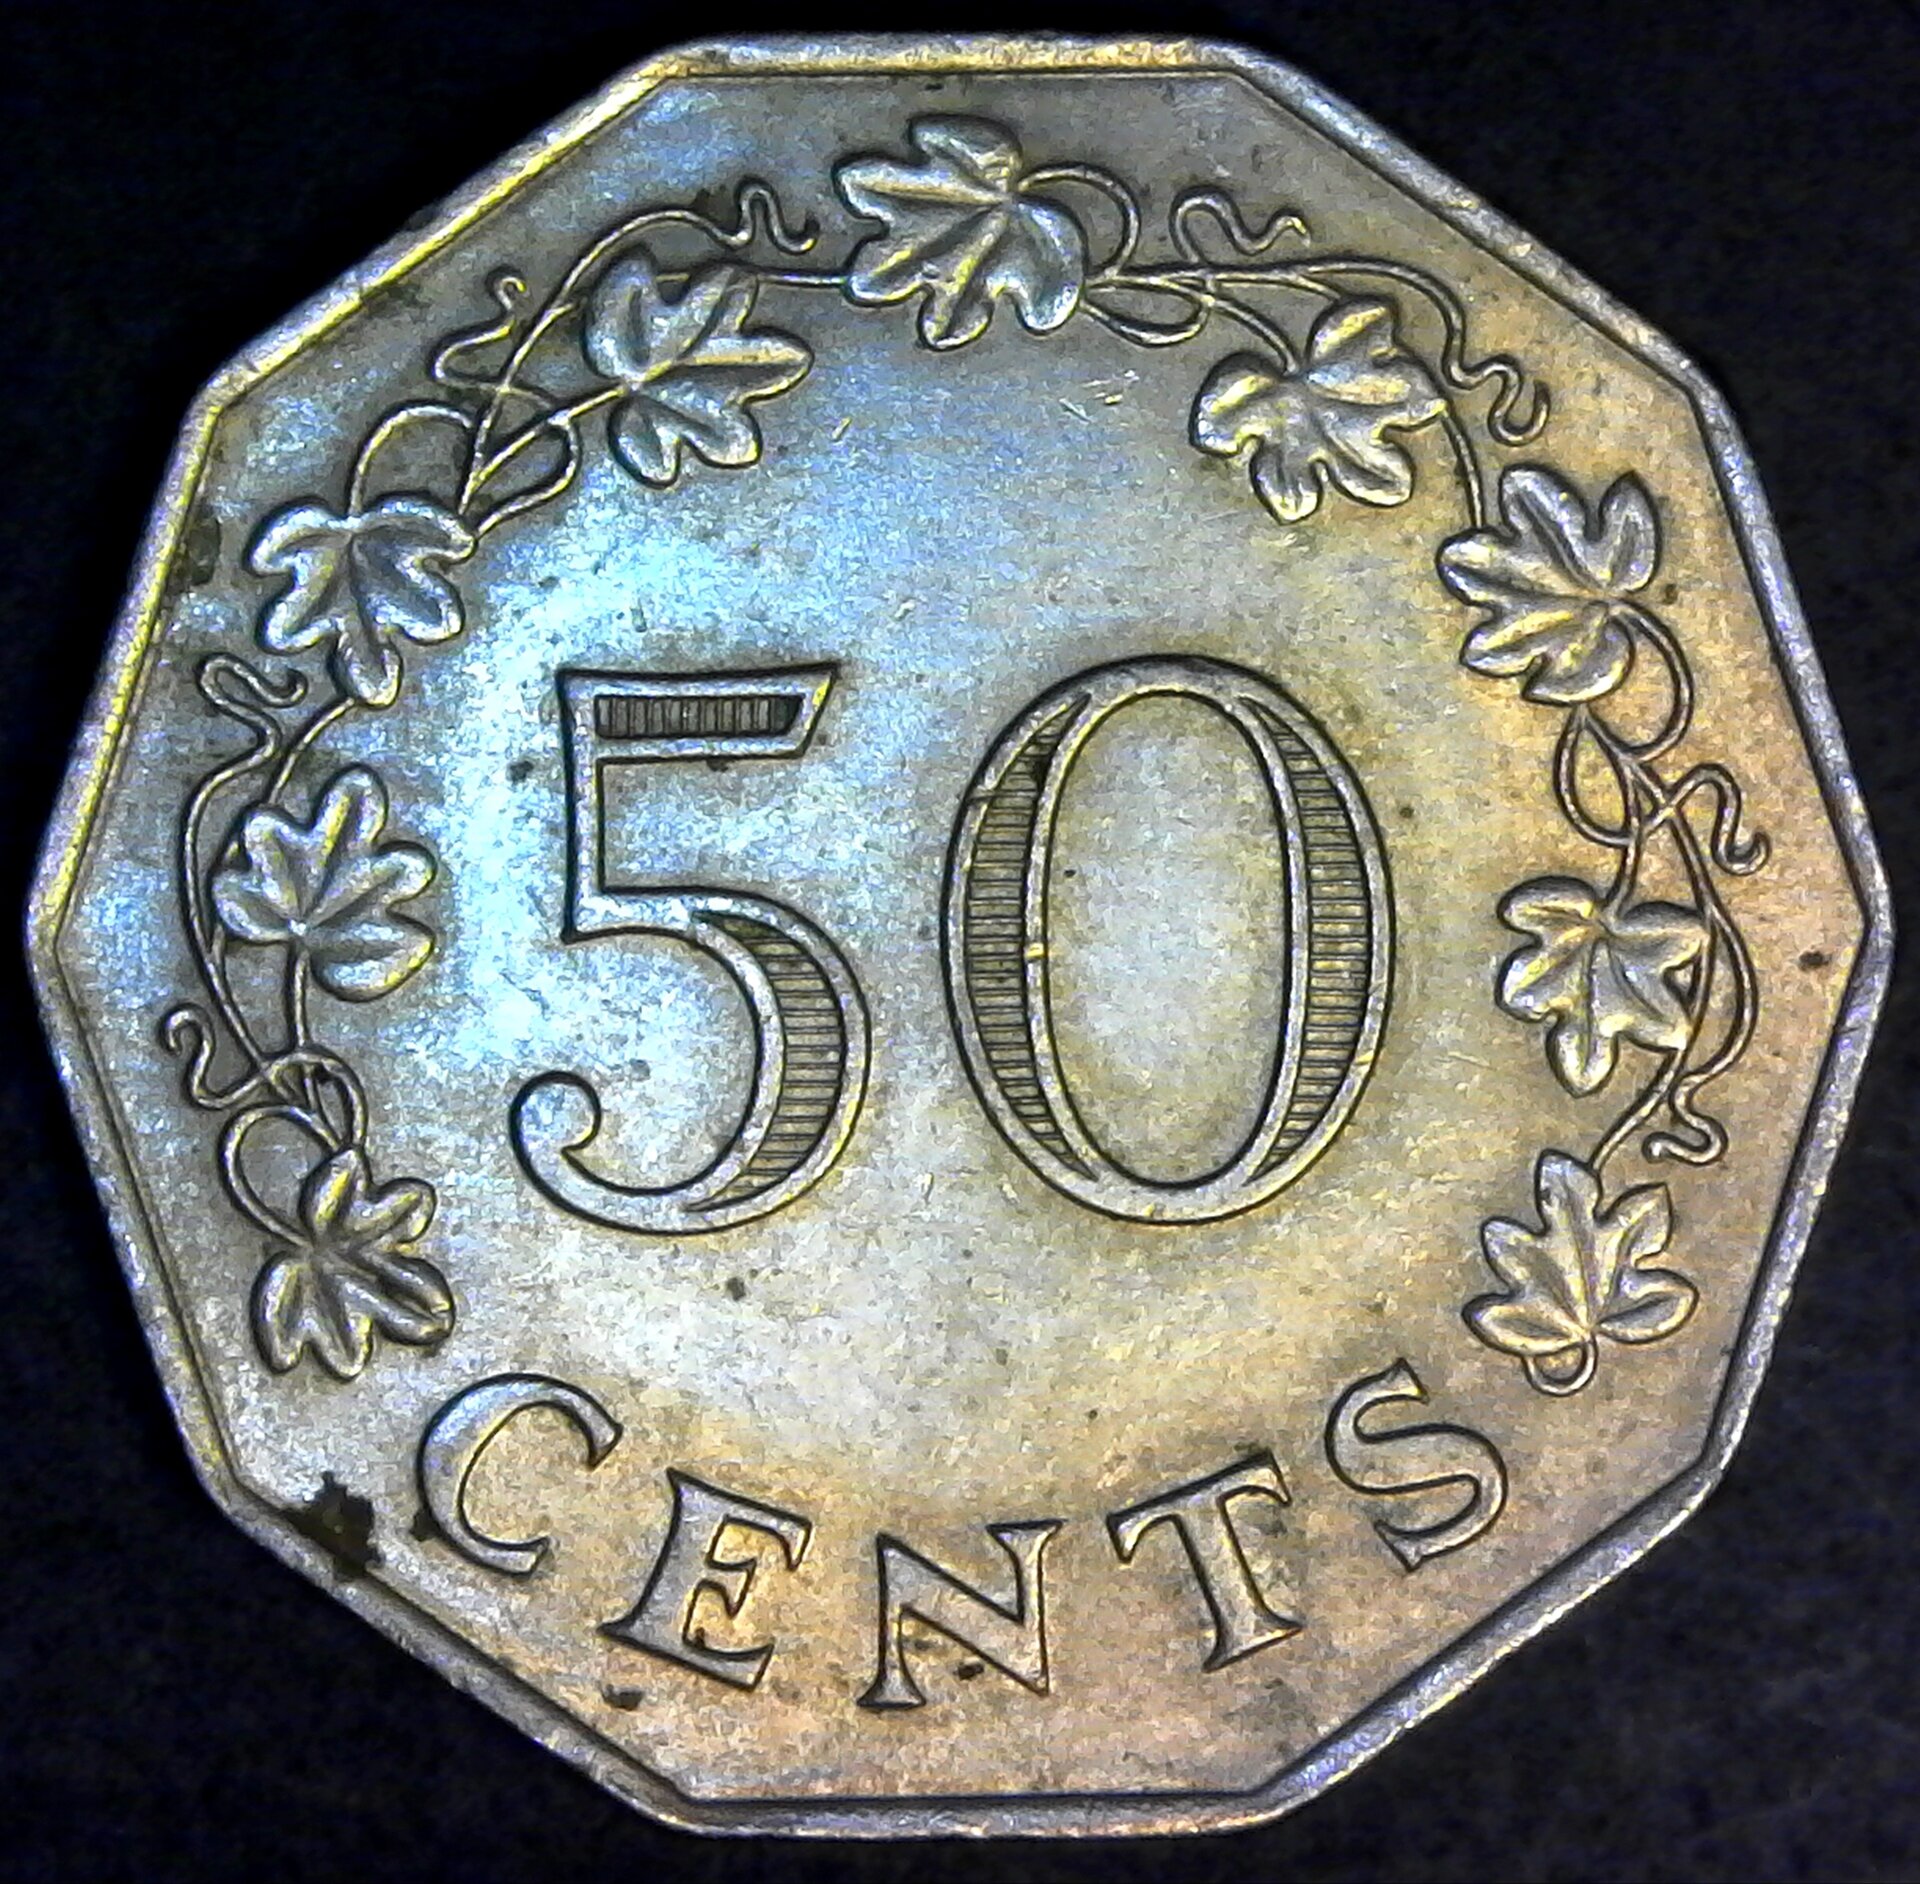 Malta 50 Cents 1972 rev.jpg